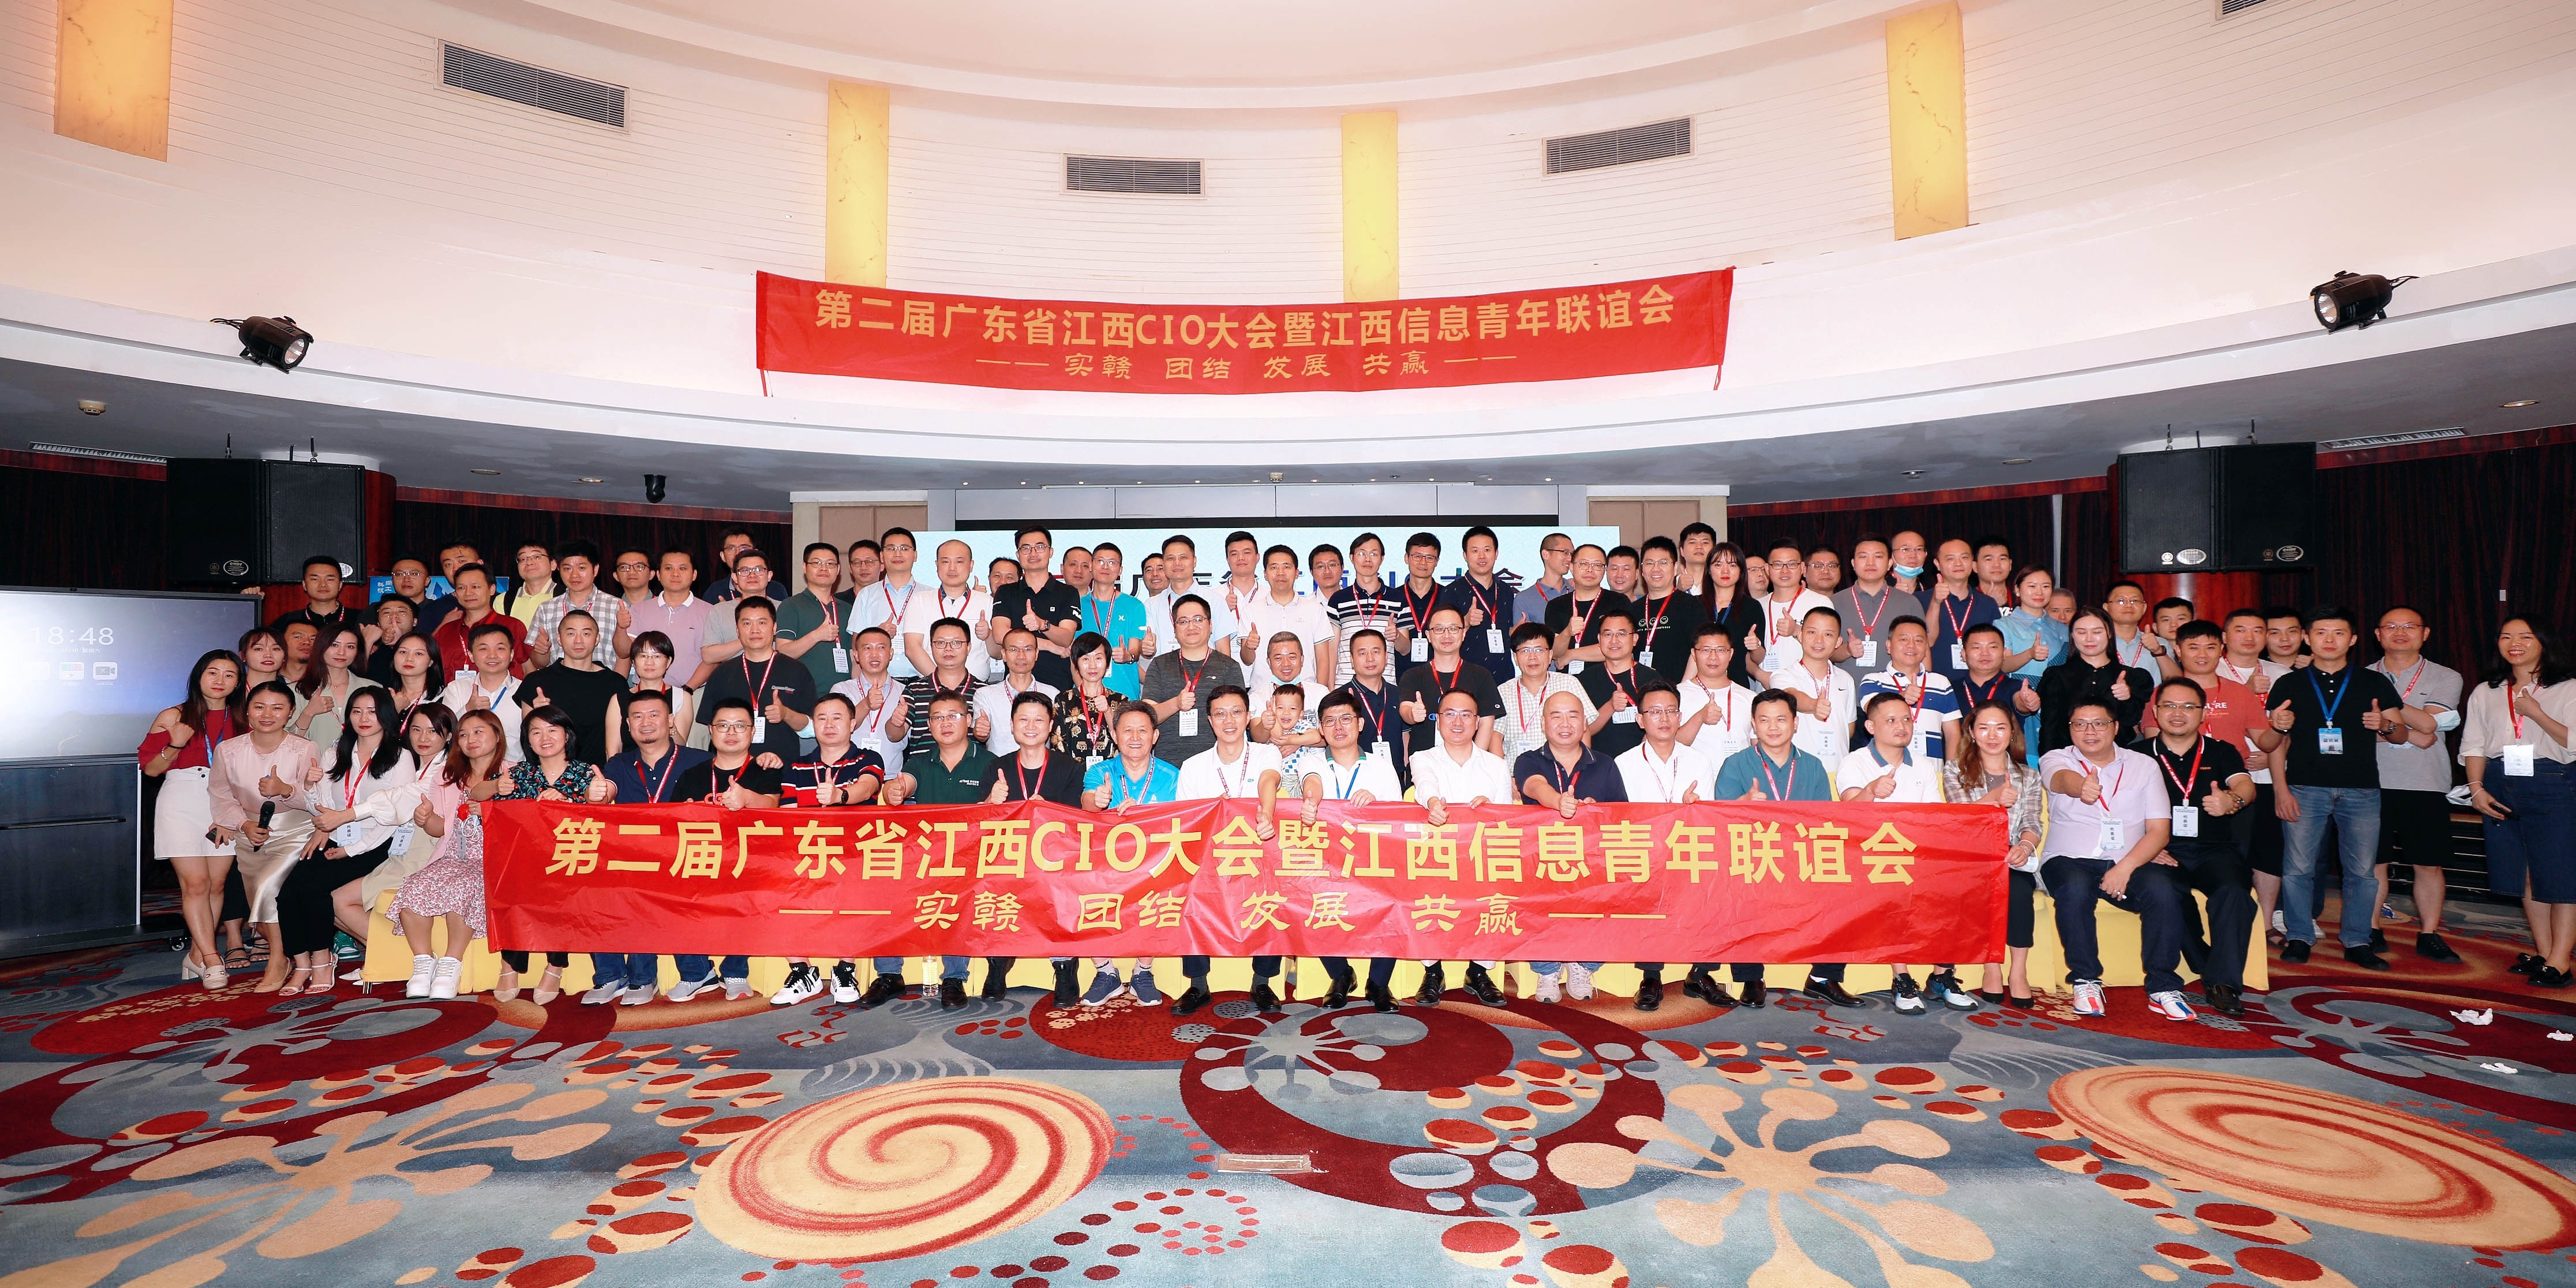 与实“赣”者同行，沙巴足球科技受邀出席第二届广东省江西CIO大会暨江西信息青年联谊会